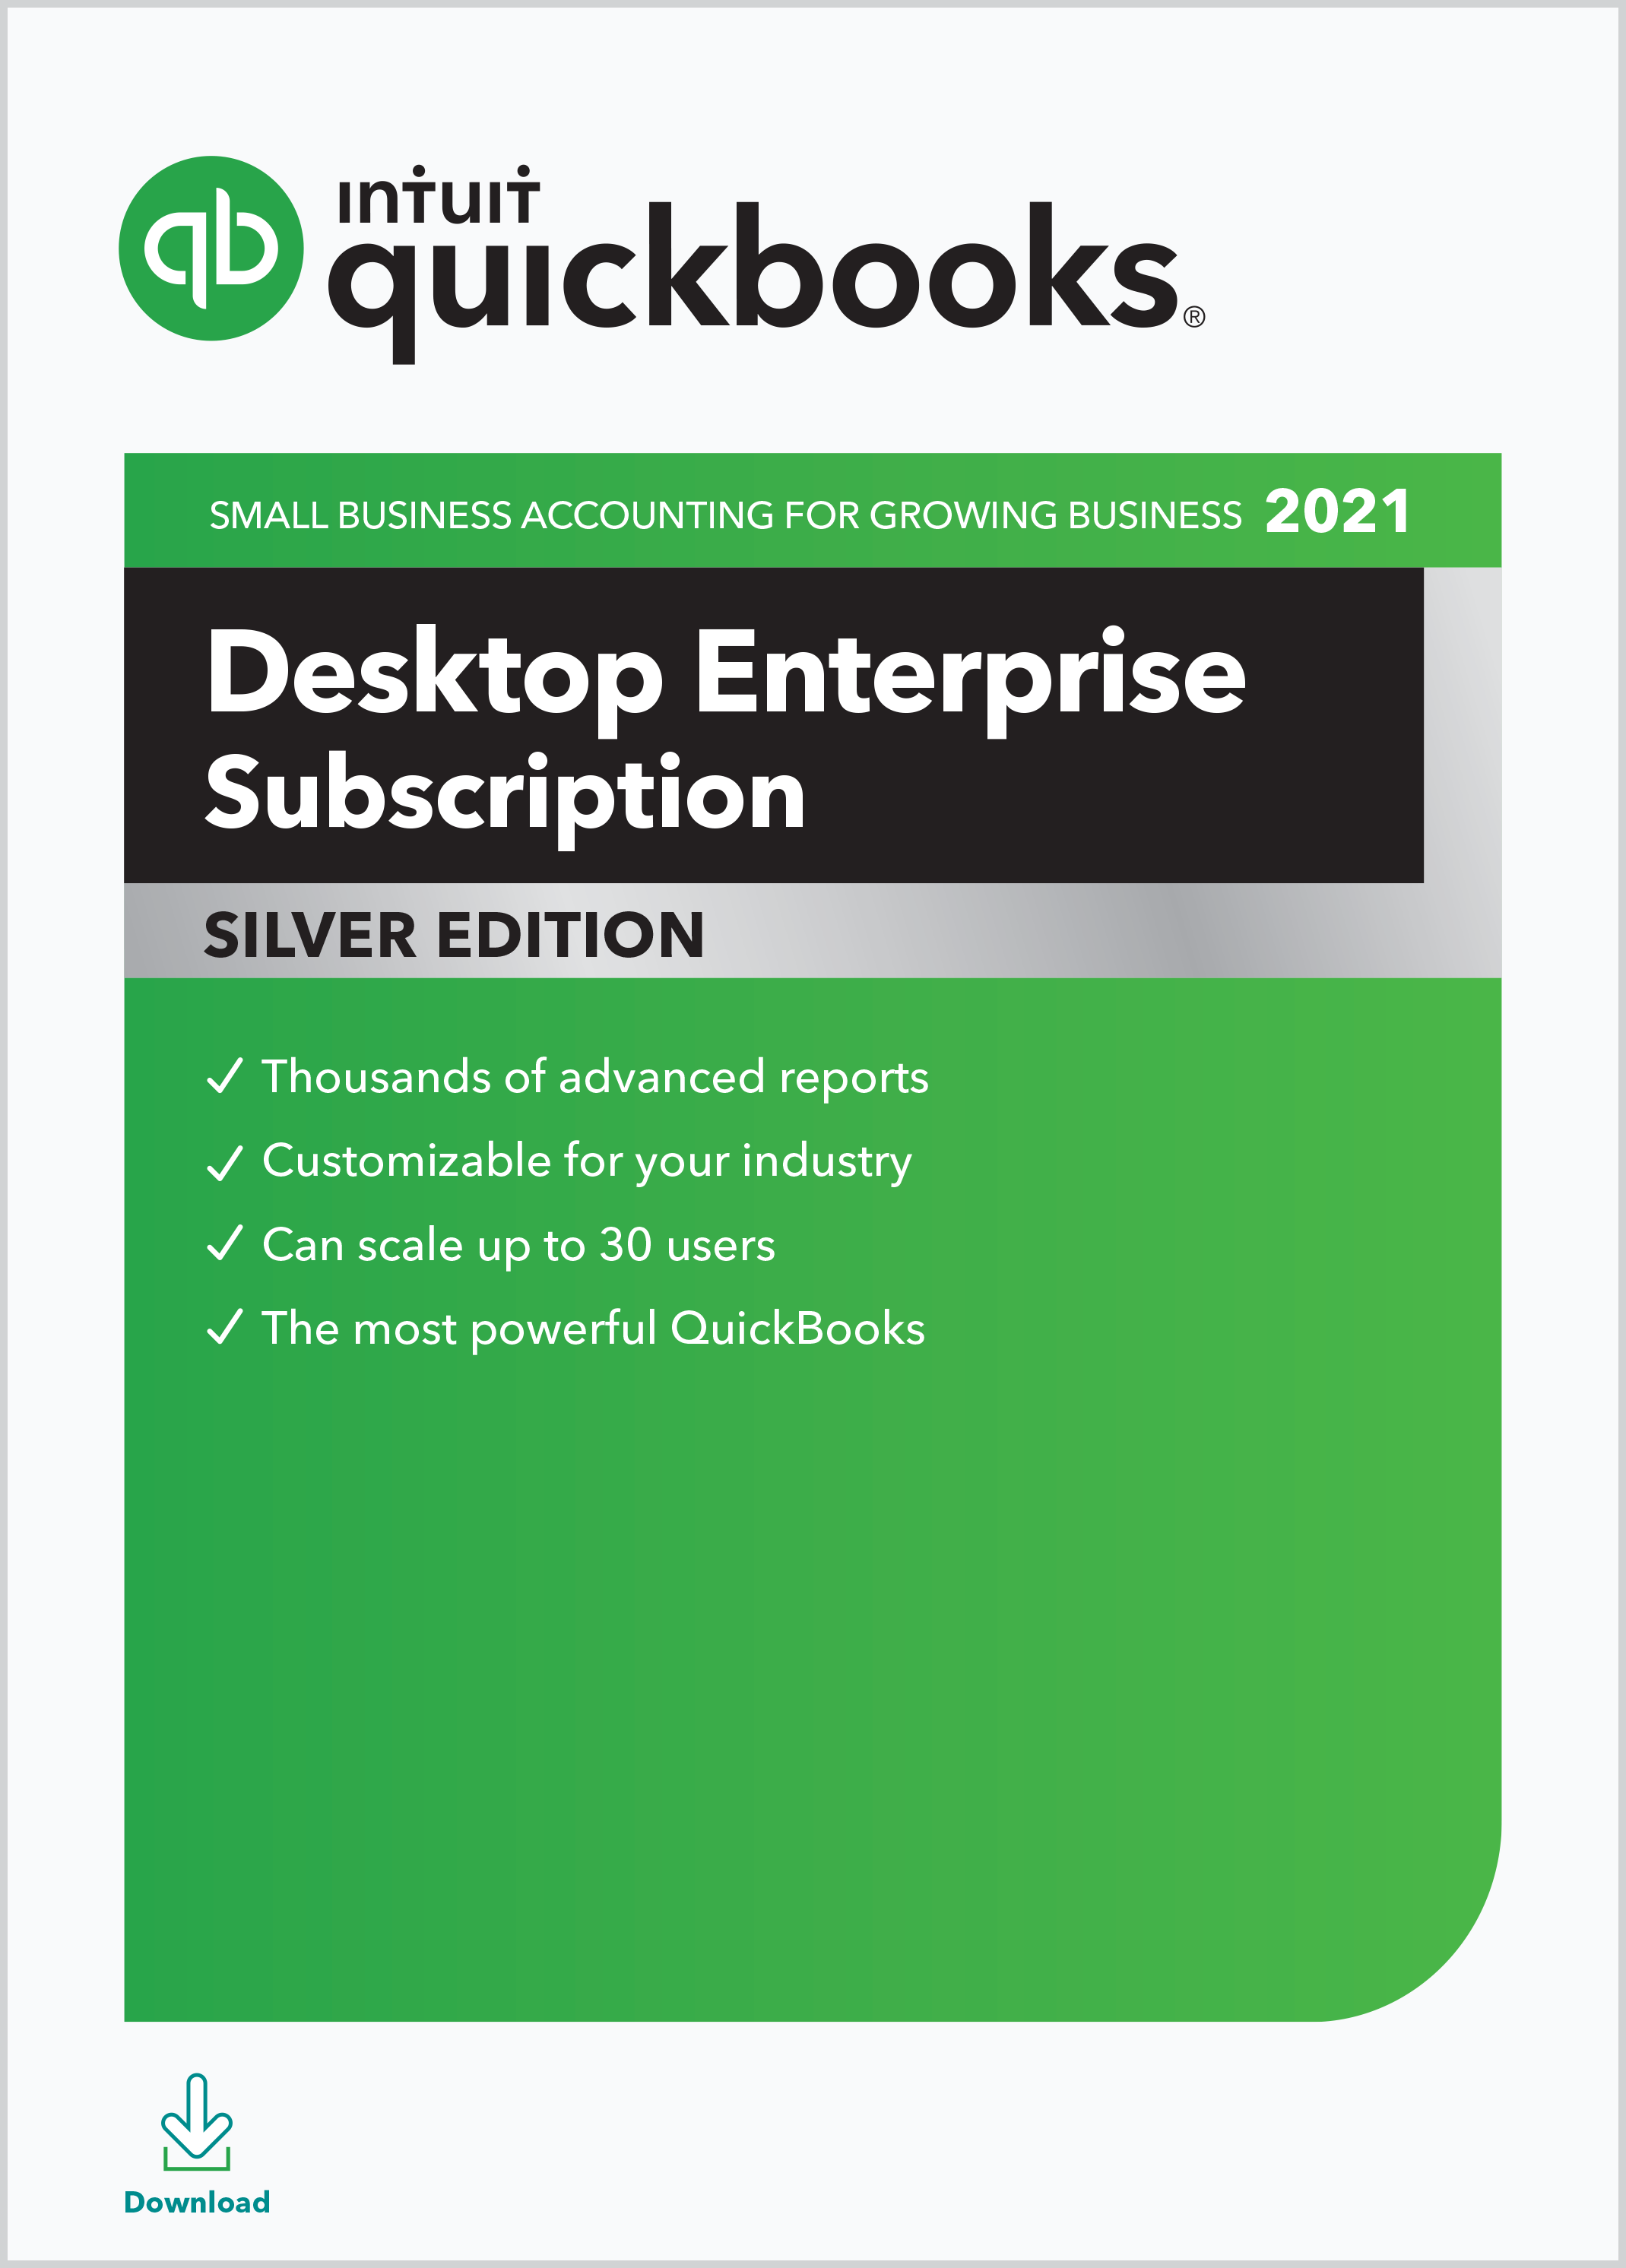 intuit quickbooks desktop pro 2016 headquarters